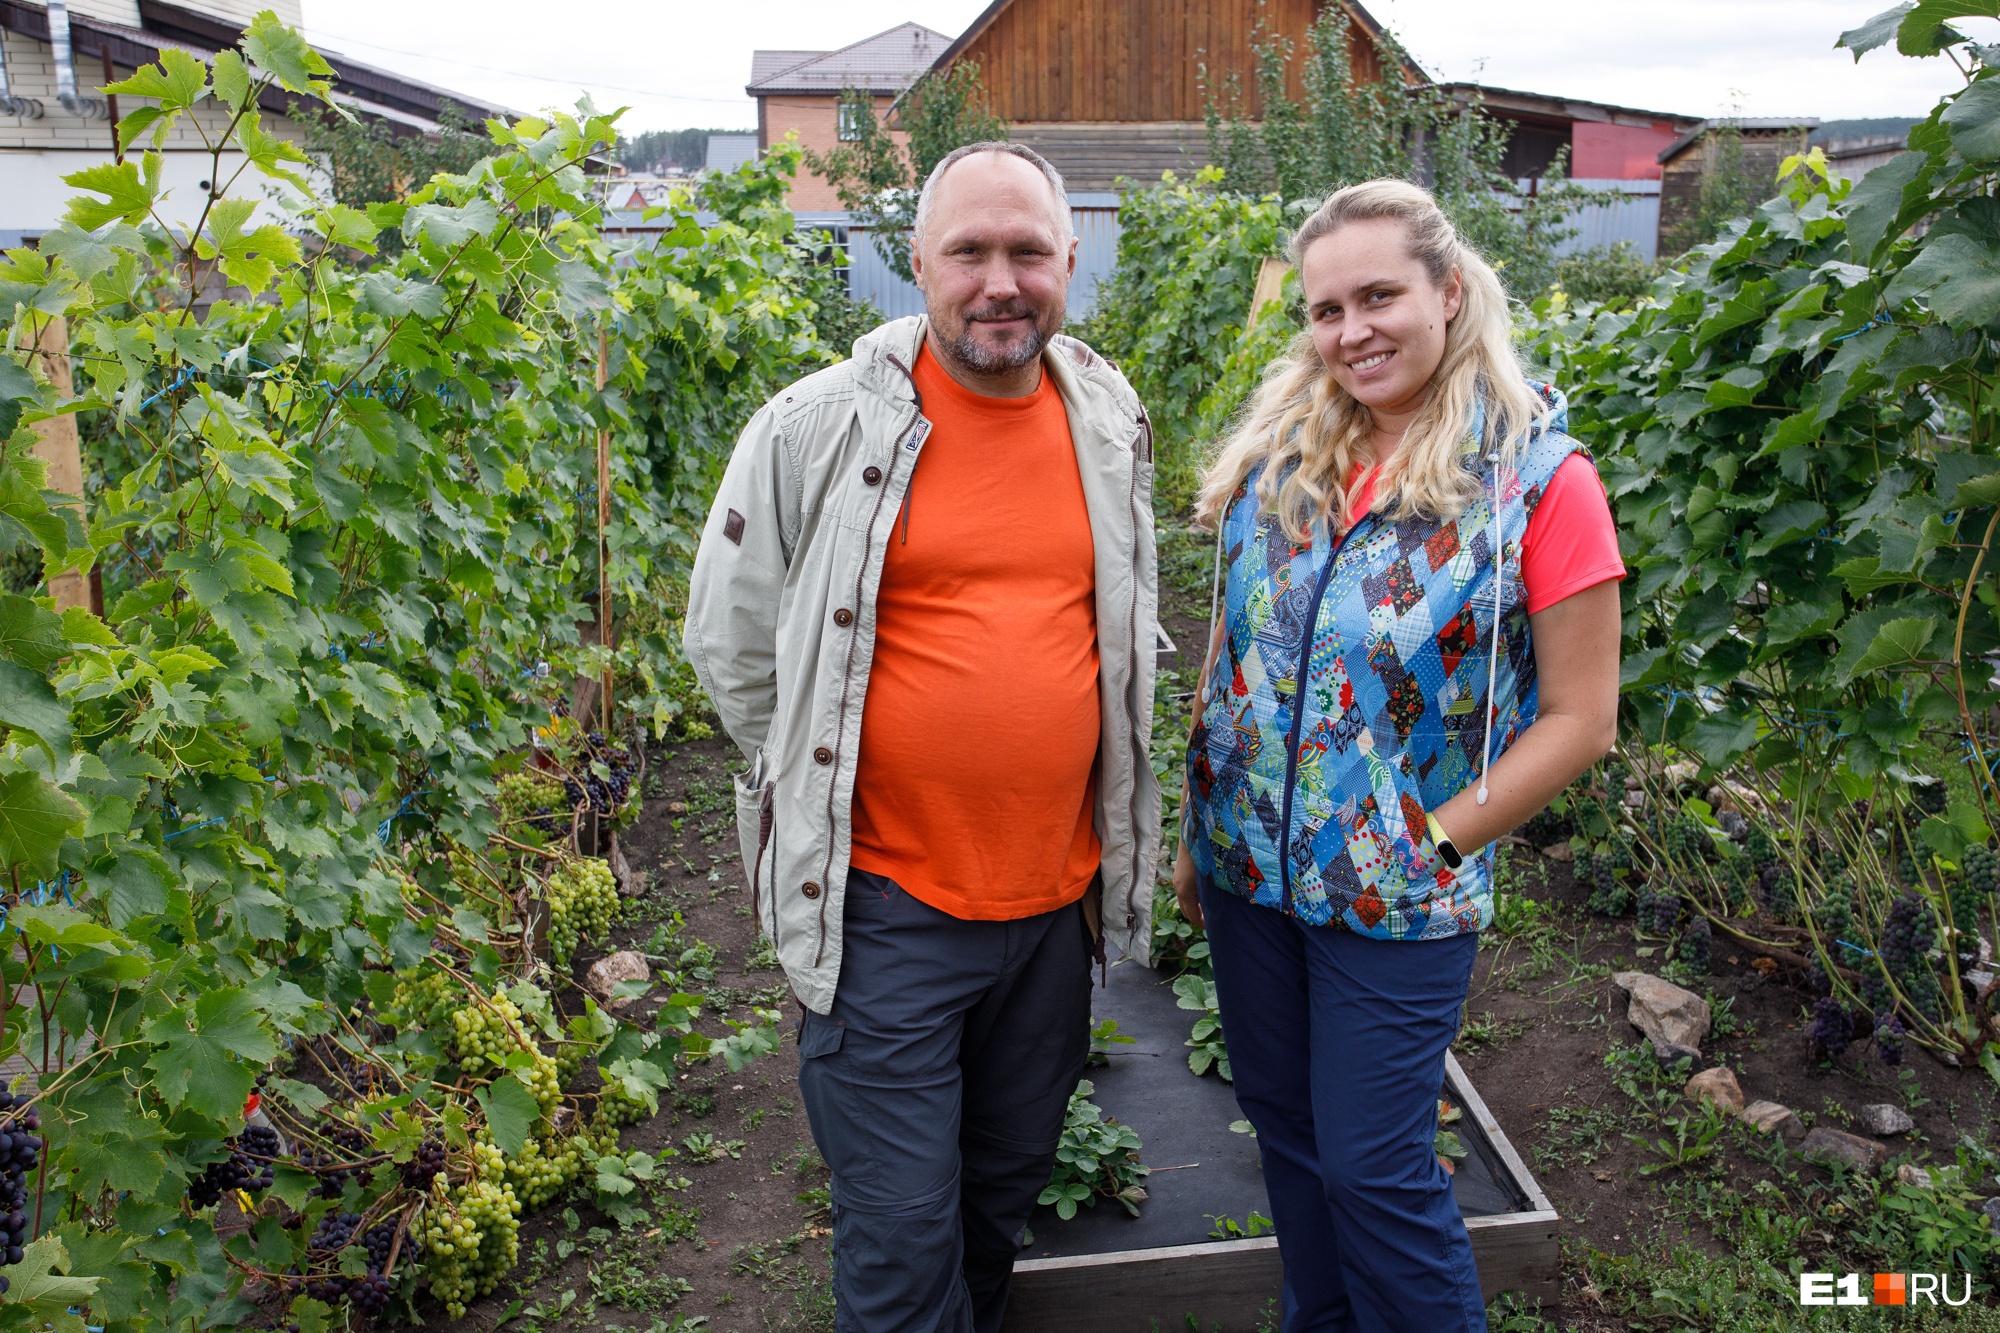 Бизнес на лозе: семья из Казахстана выращивает виноград под Сысертью